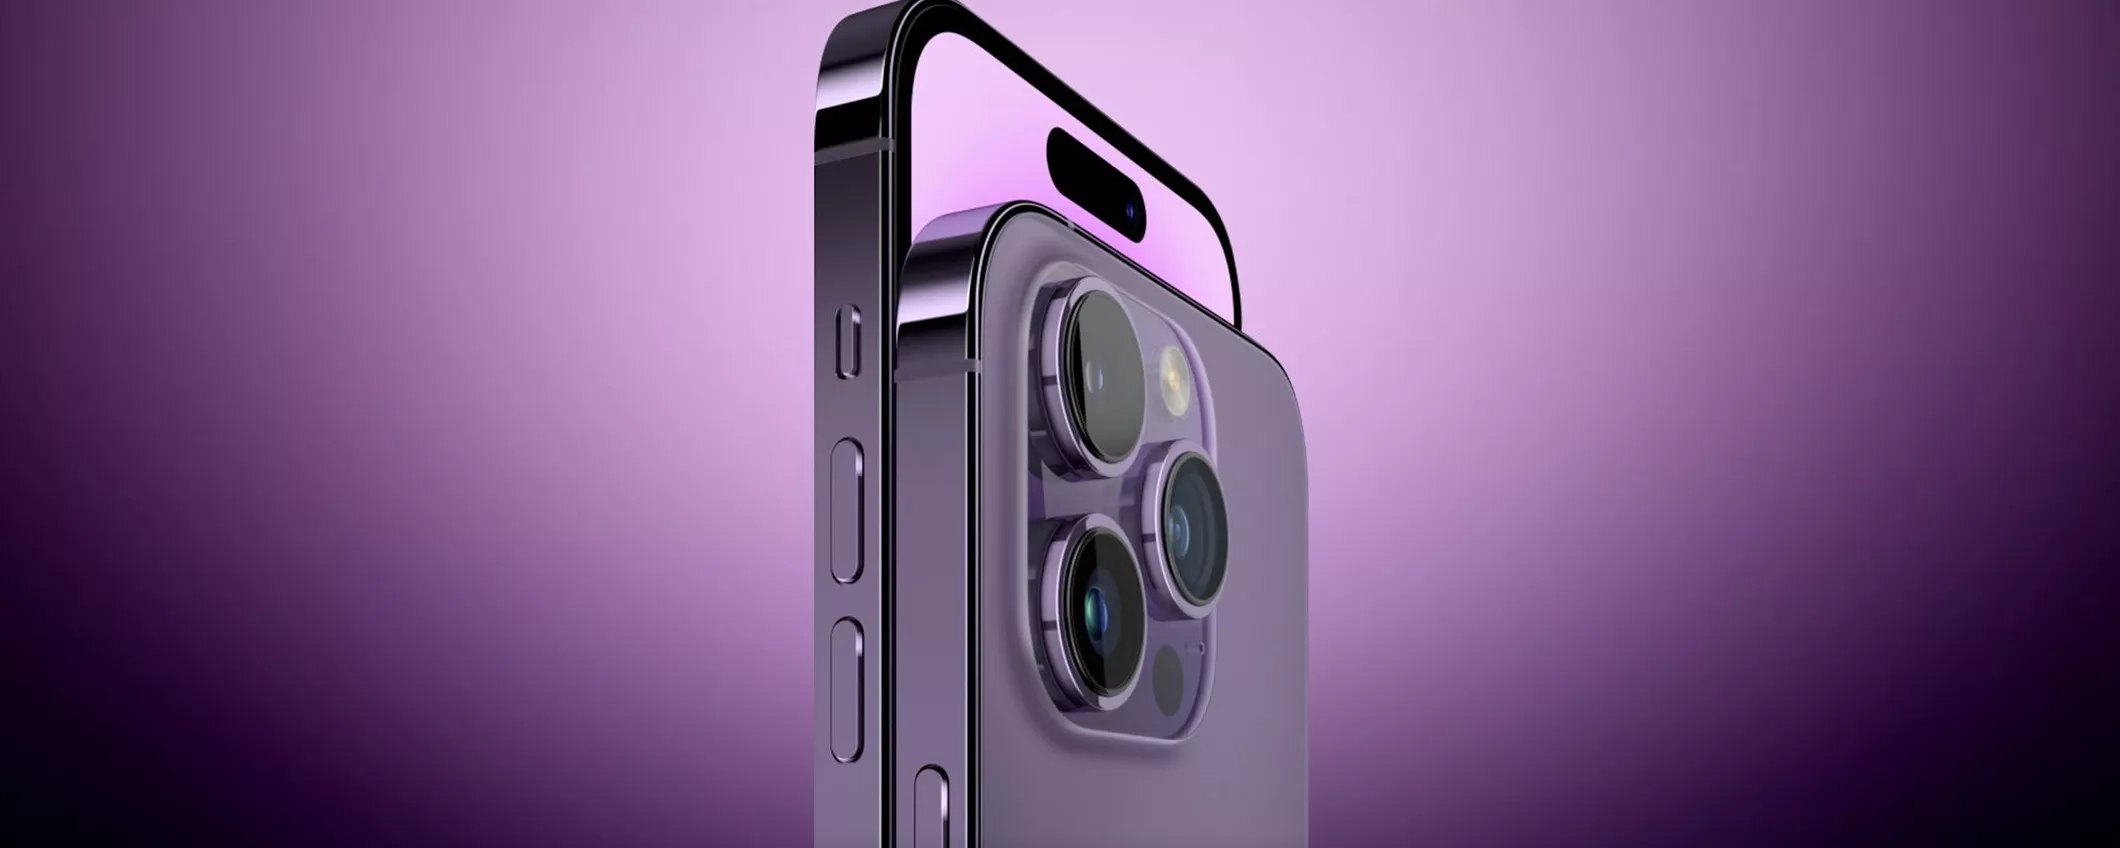 iPhone 15 Pro Max: fotocamere migliorate e sensore principale da quasi 1 pollice